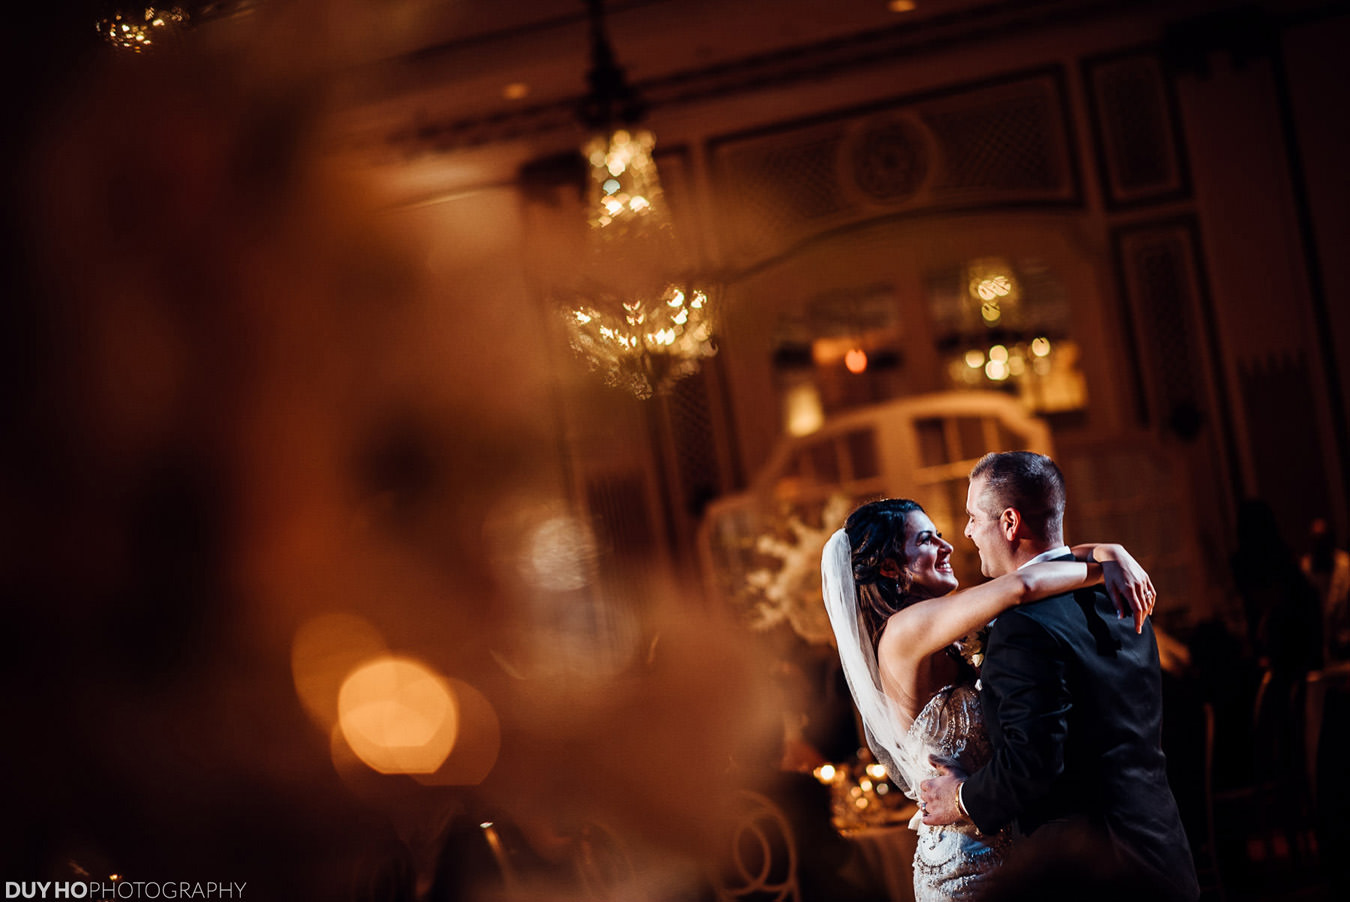 Dana + Yousef | Palace Hotel Wedding Photo